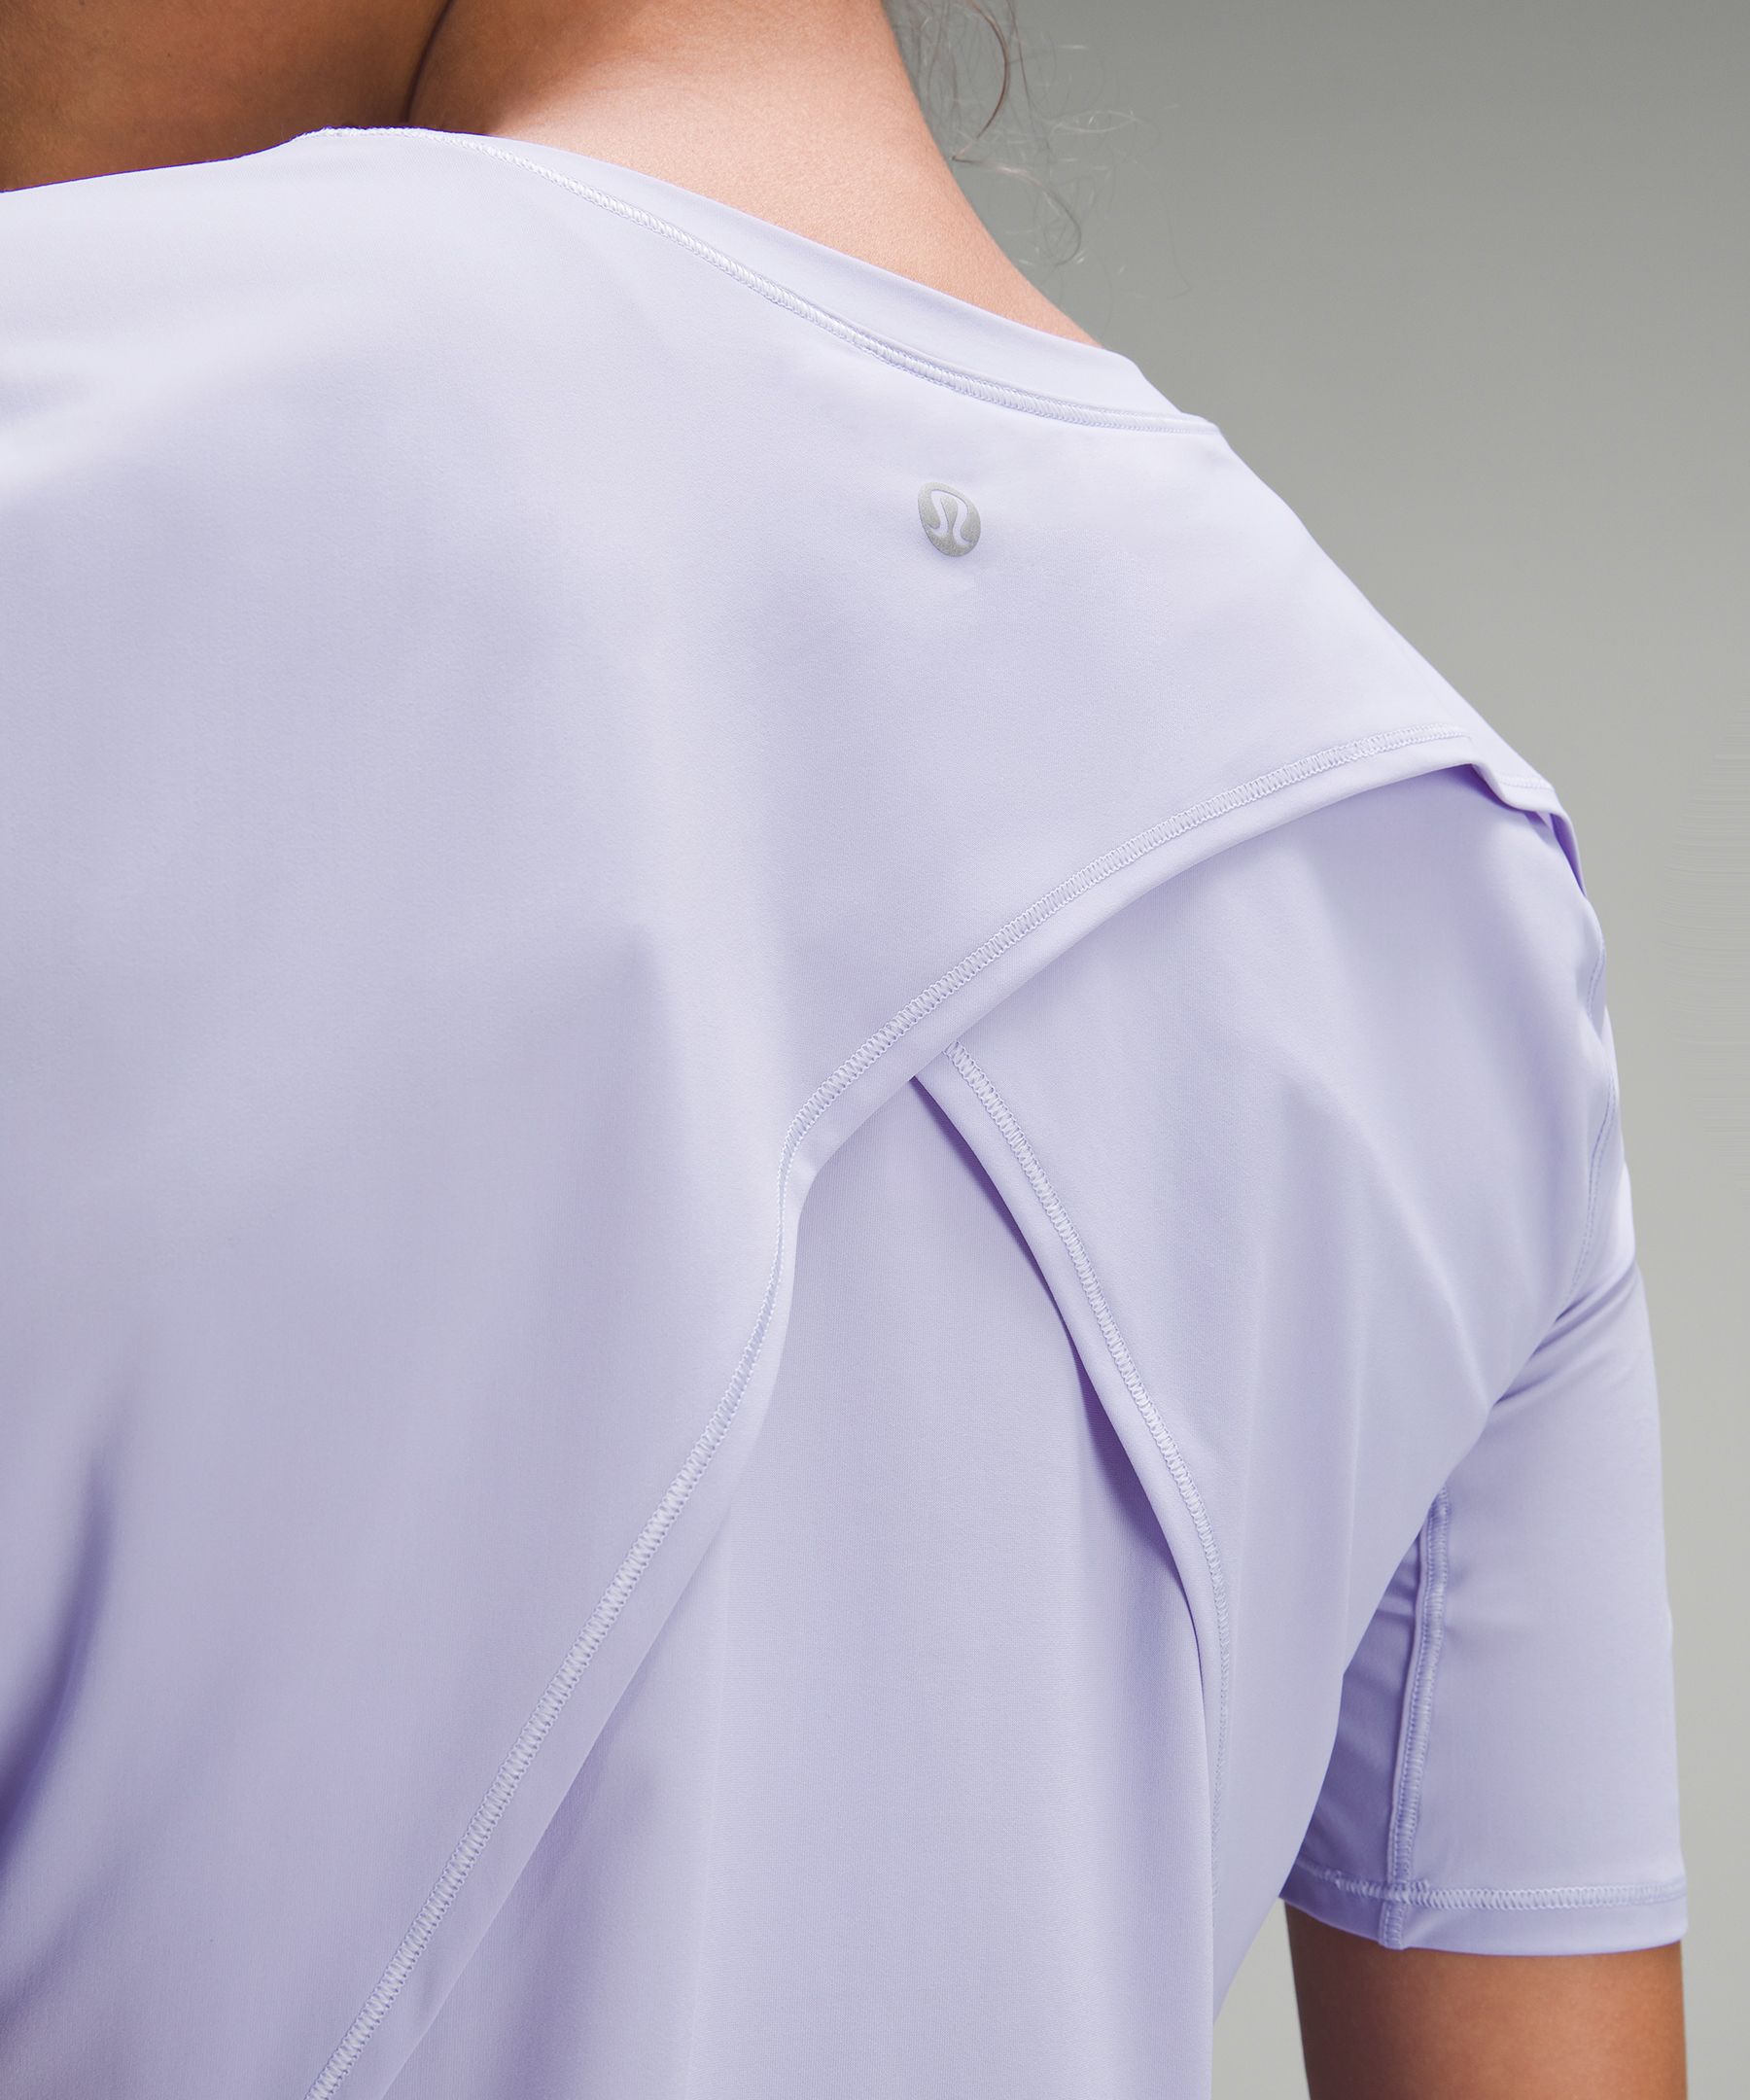 Lululemon UV Protection Fold-Over Running T-Shirt. 5